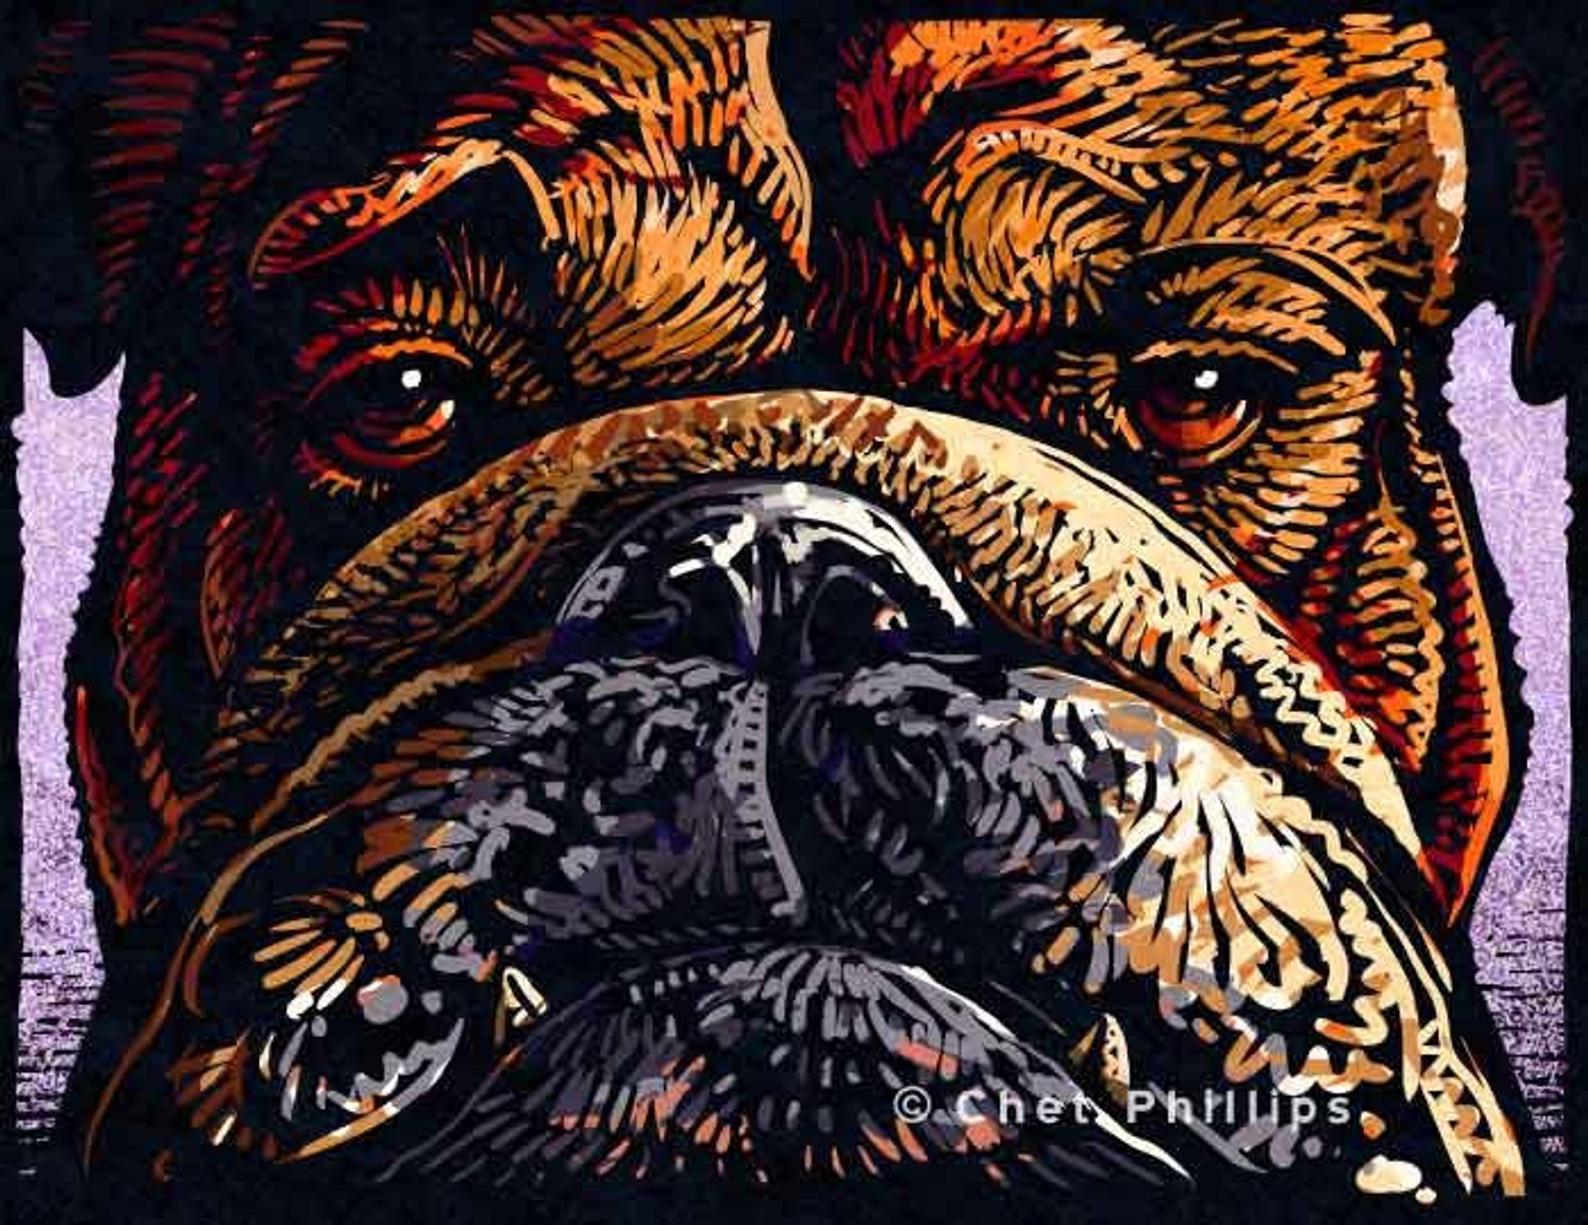 Bulldog 8 x 10" print